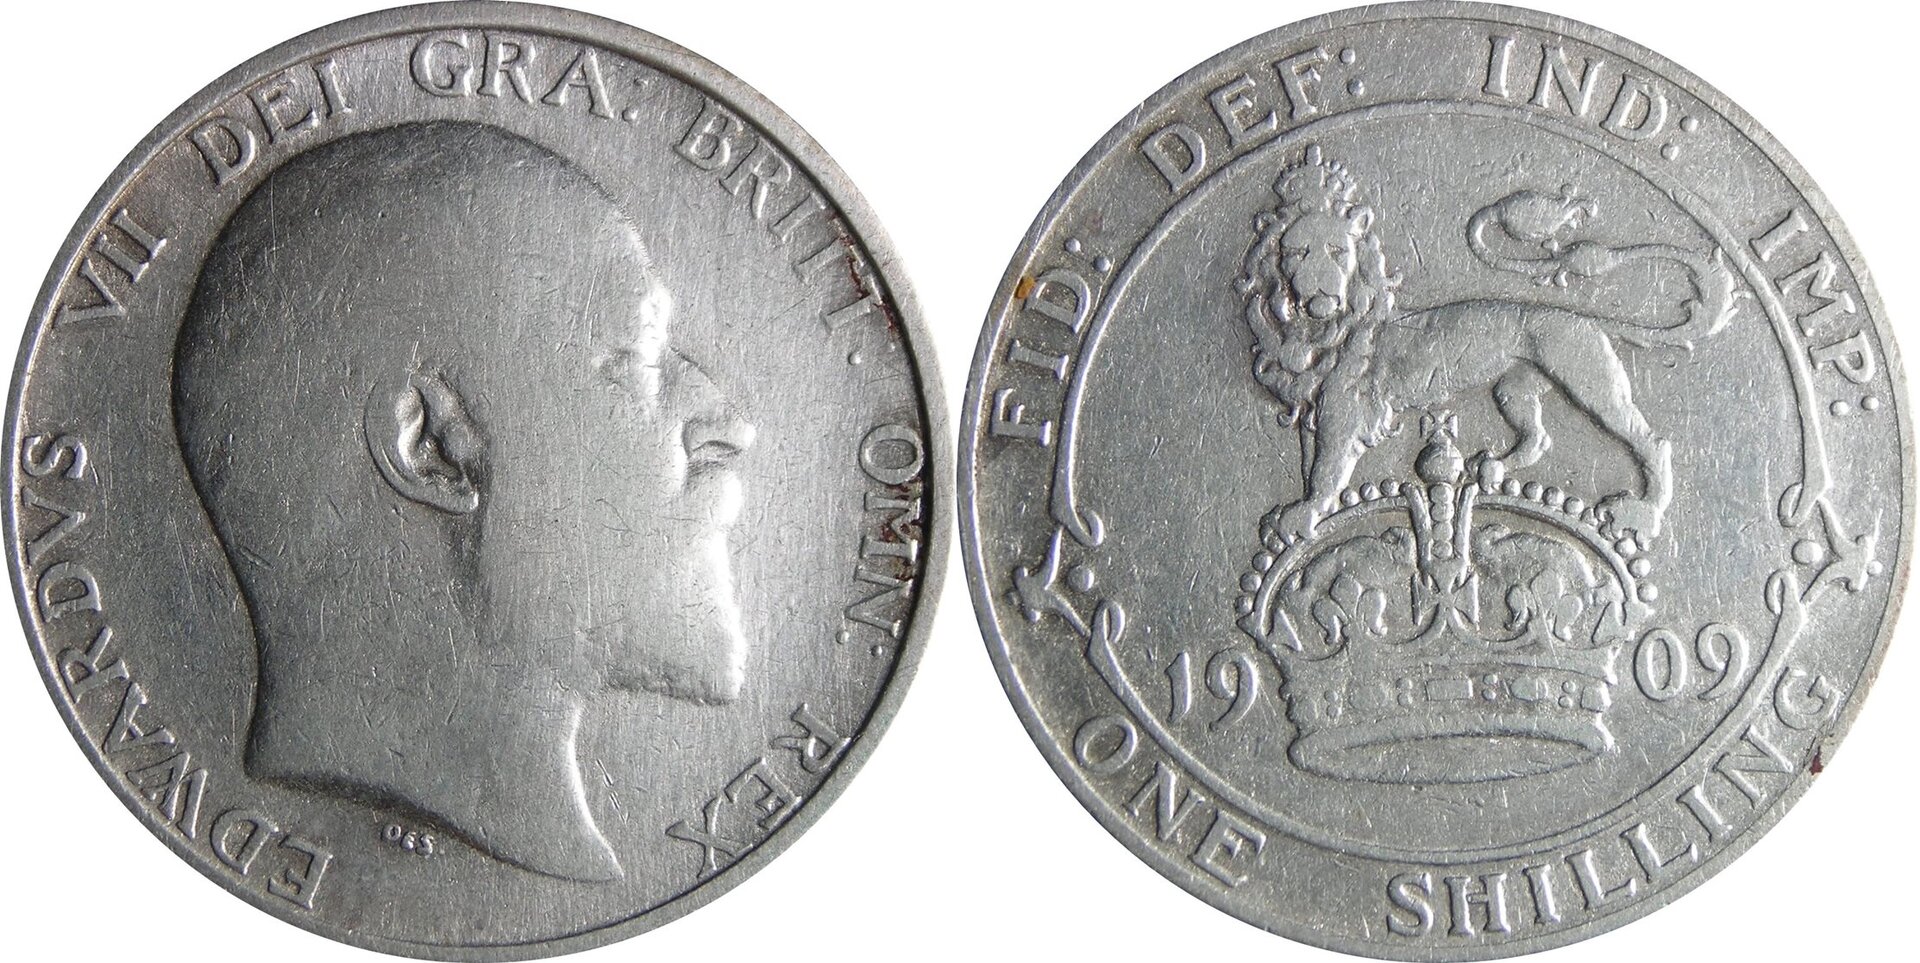 1909 GB shilling.jpg